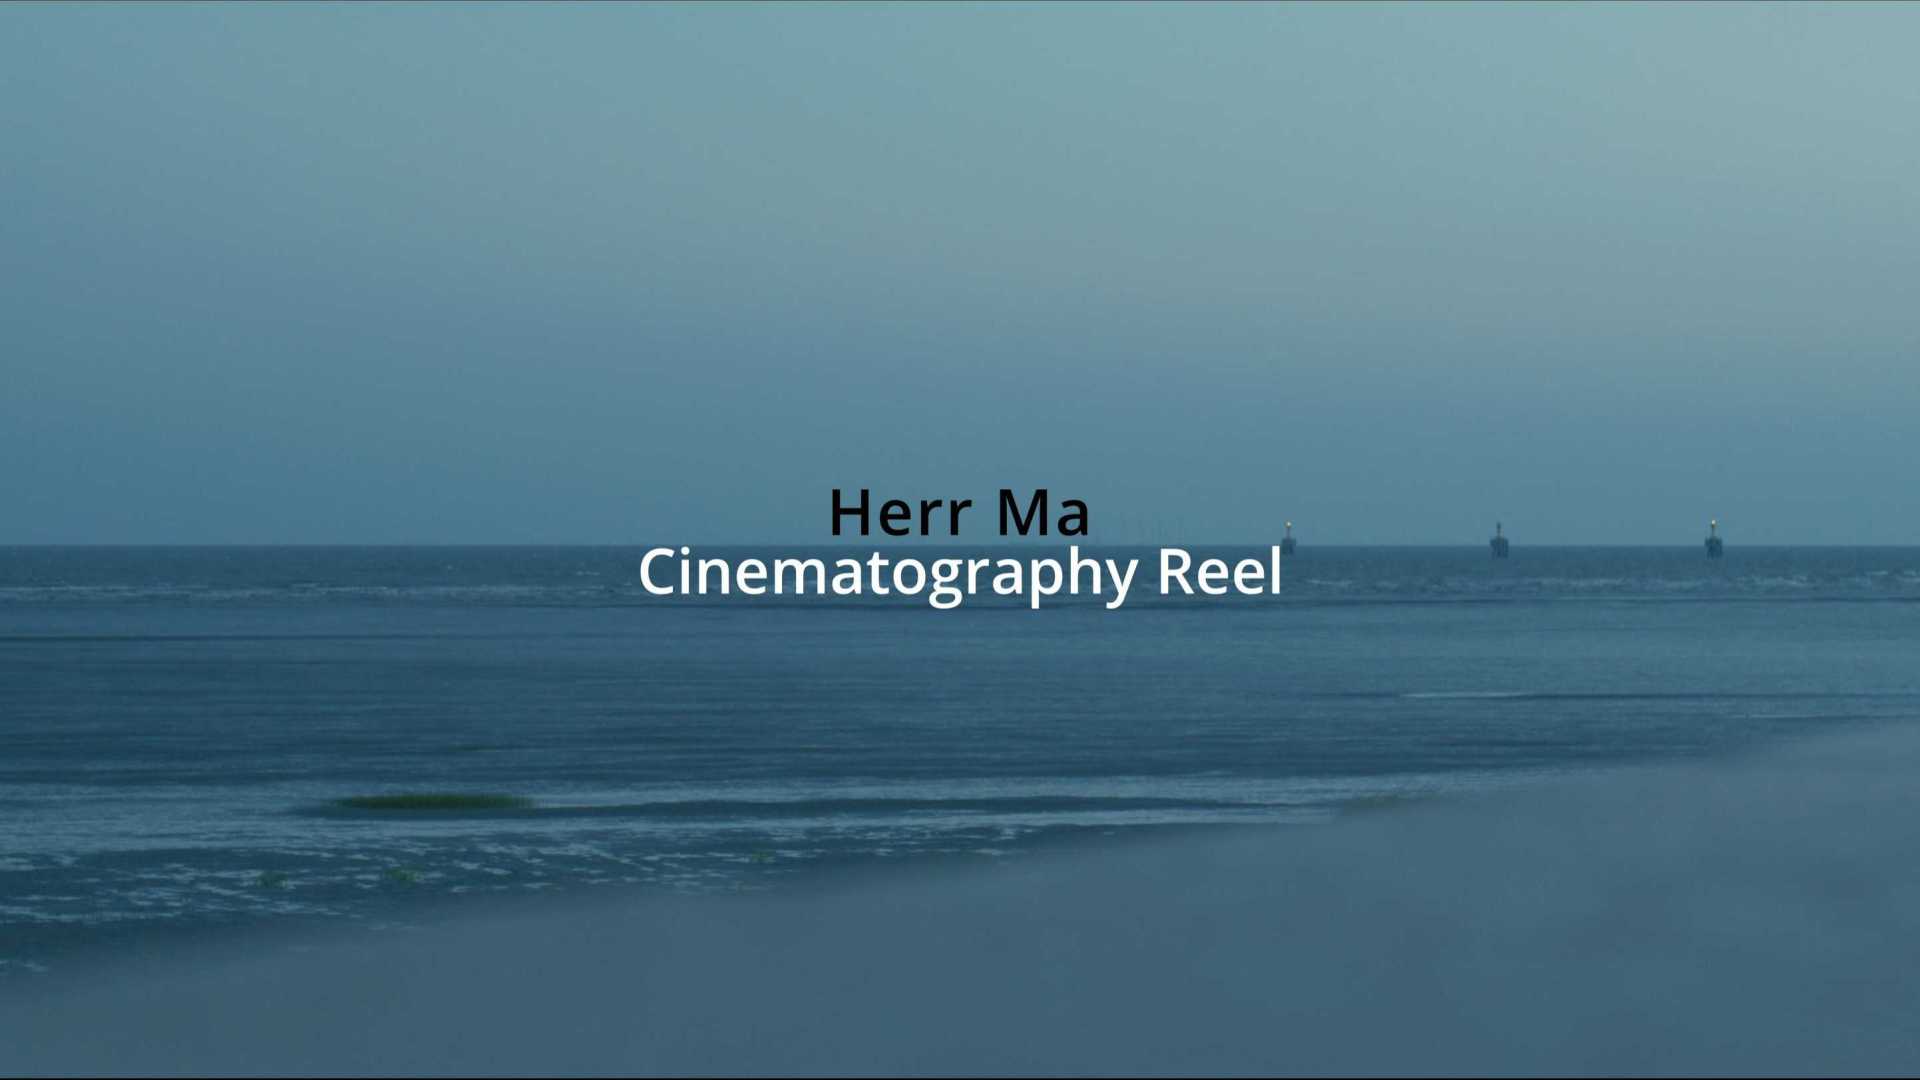 Cinematography Reel (HerrMa)